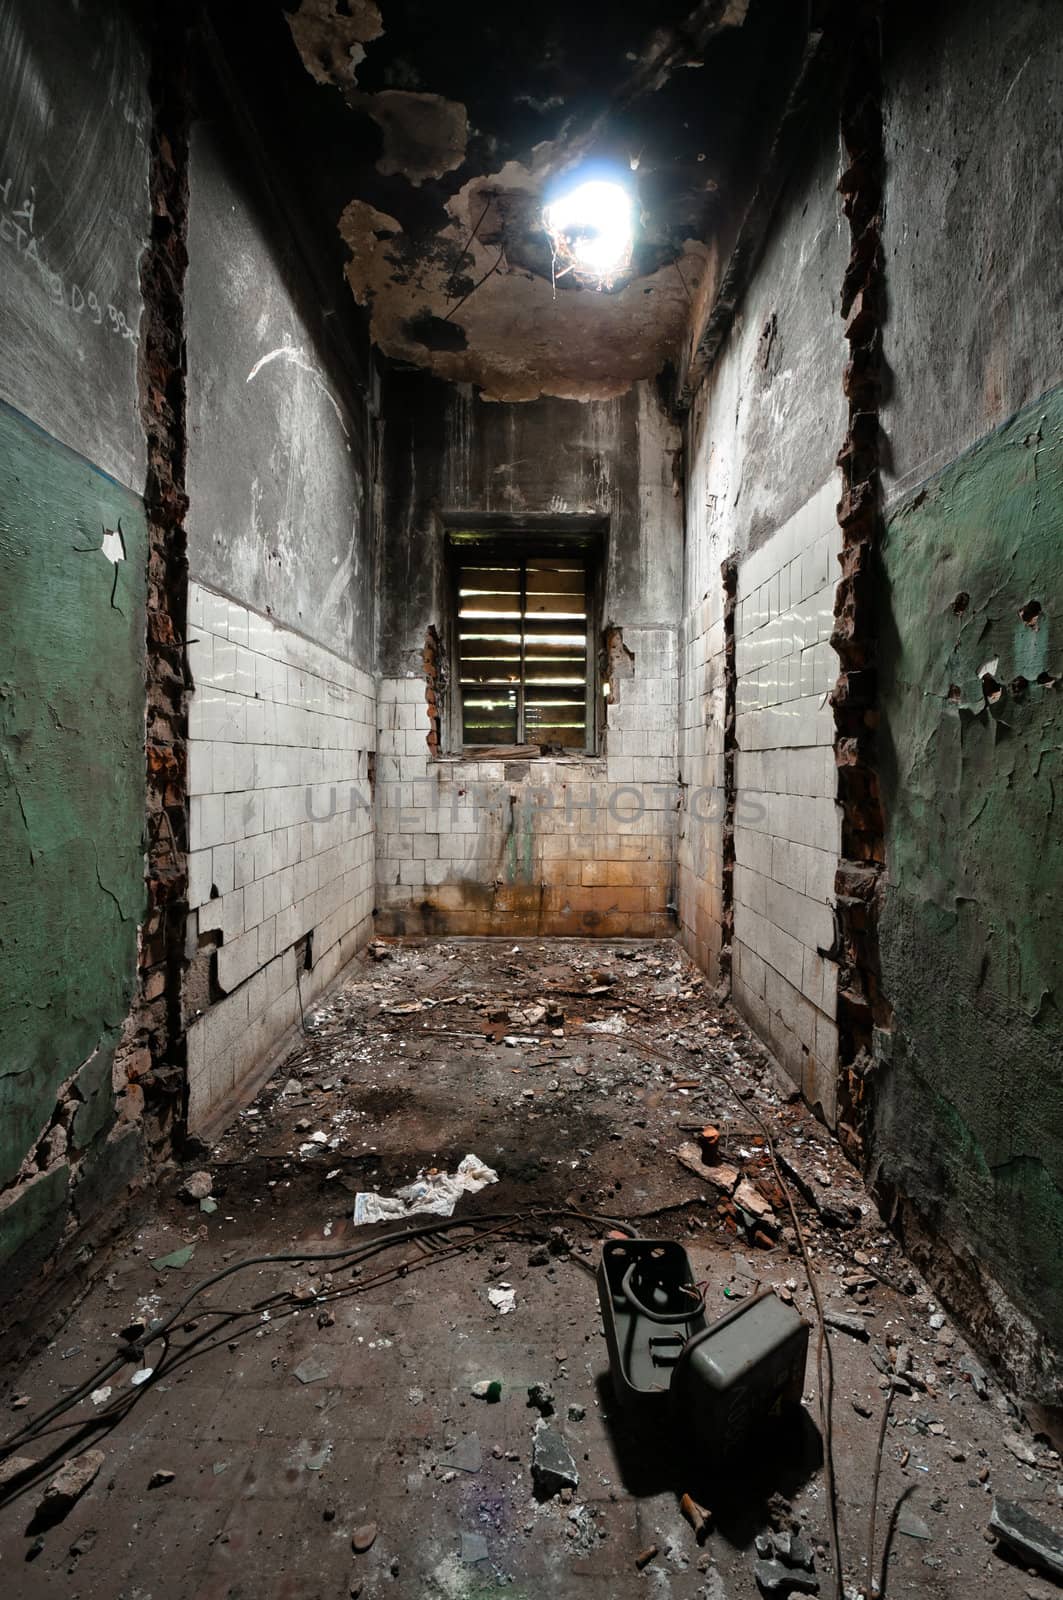 Scary and empty room by dmitryelagin